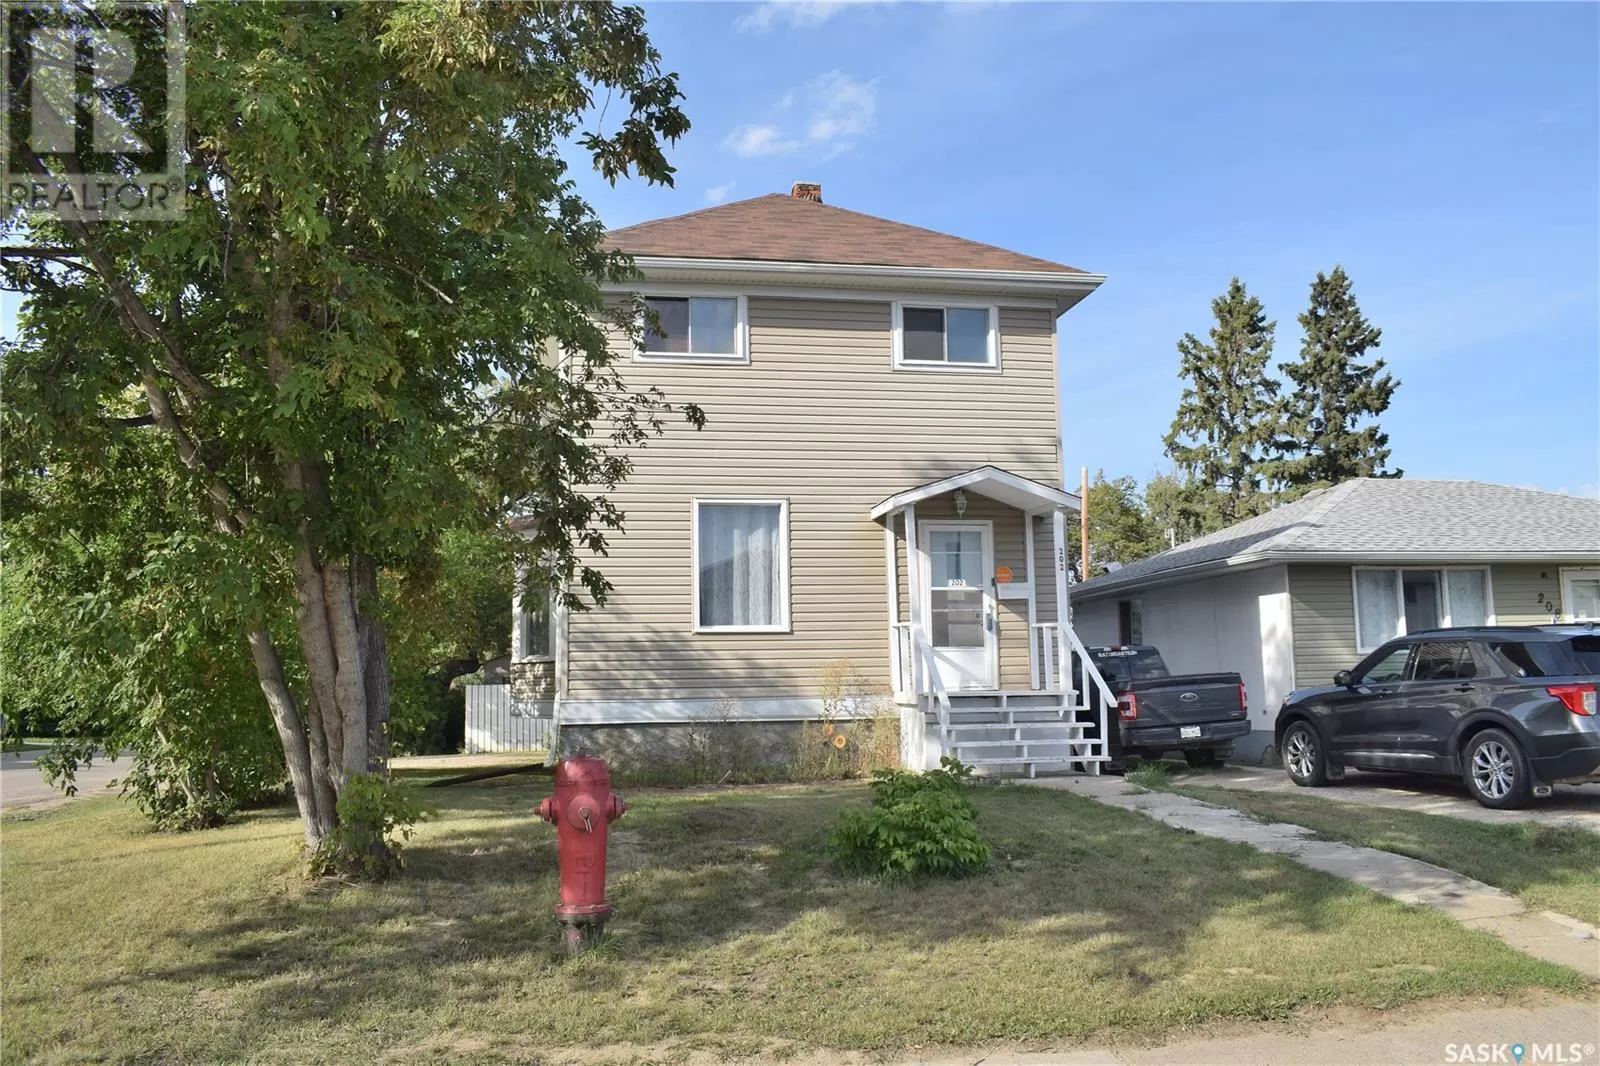 House for rent: 202 26th Street E, Prince Albert, Saskatchewan S6V 1T9